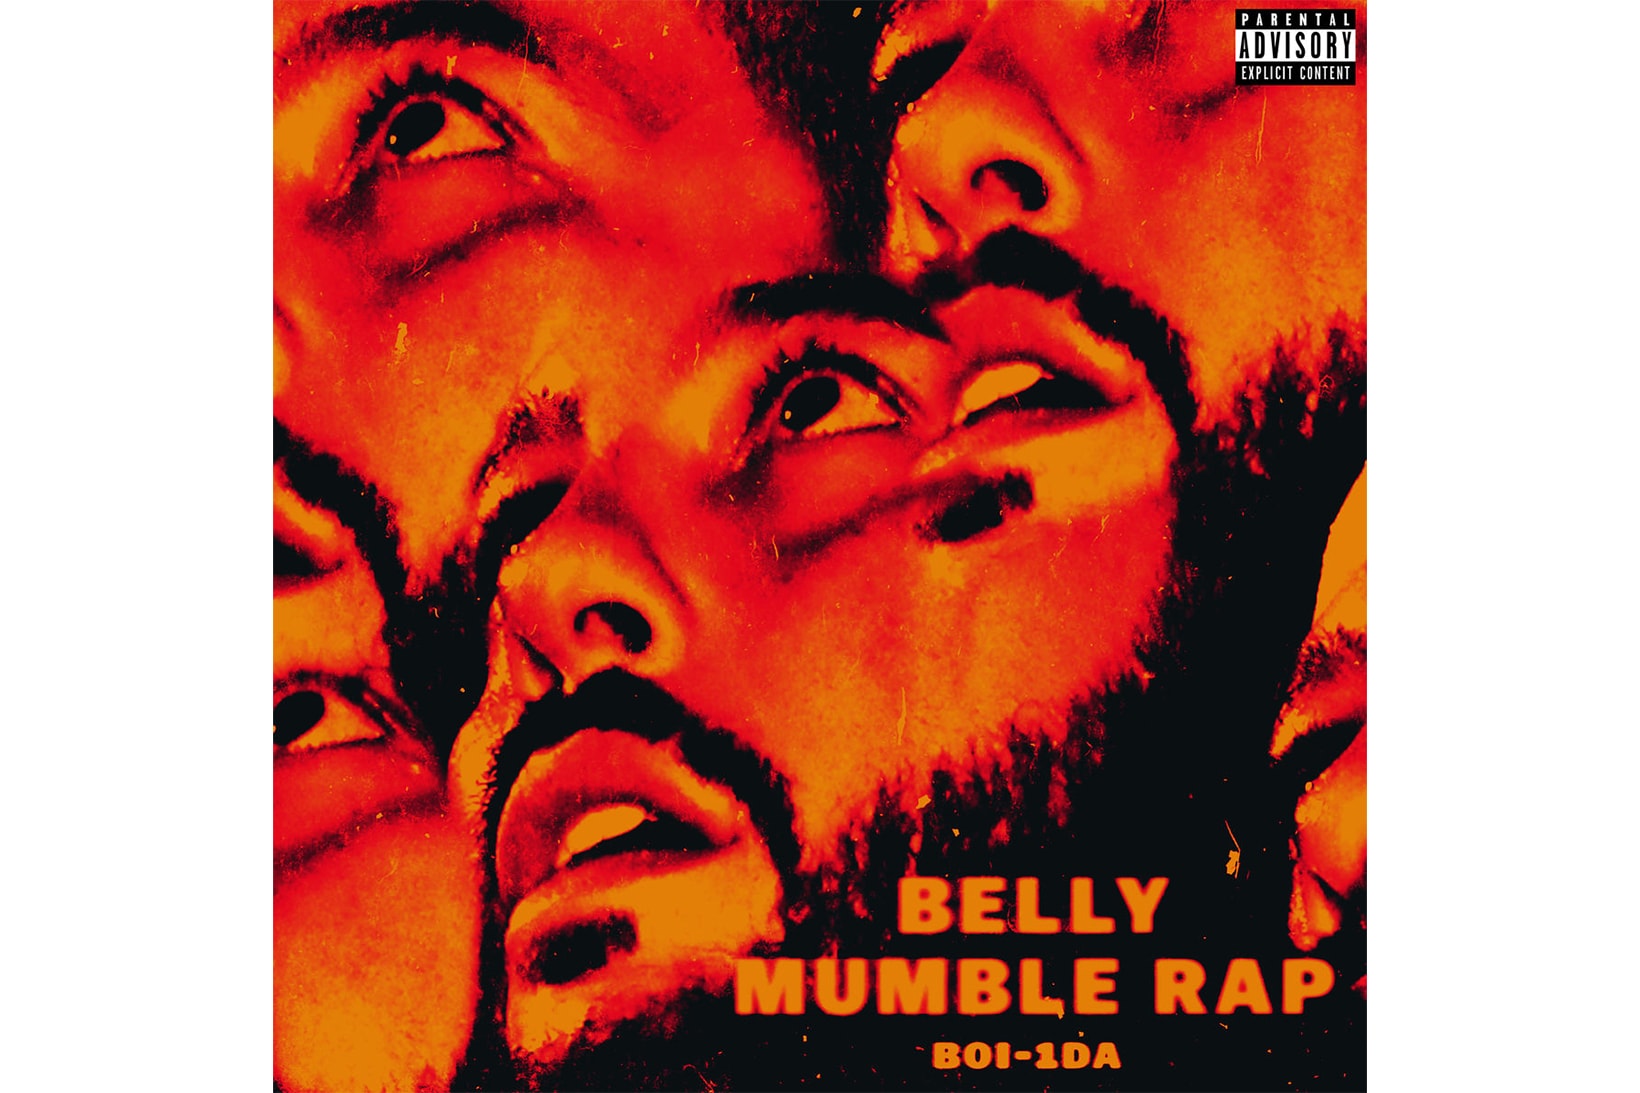 Belly Boi 1da Mumble Rap Album Stream 2017 October 6 Release